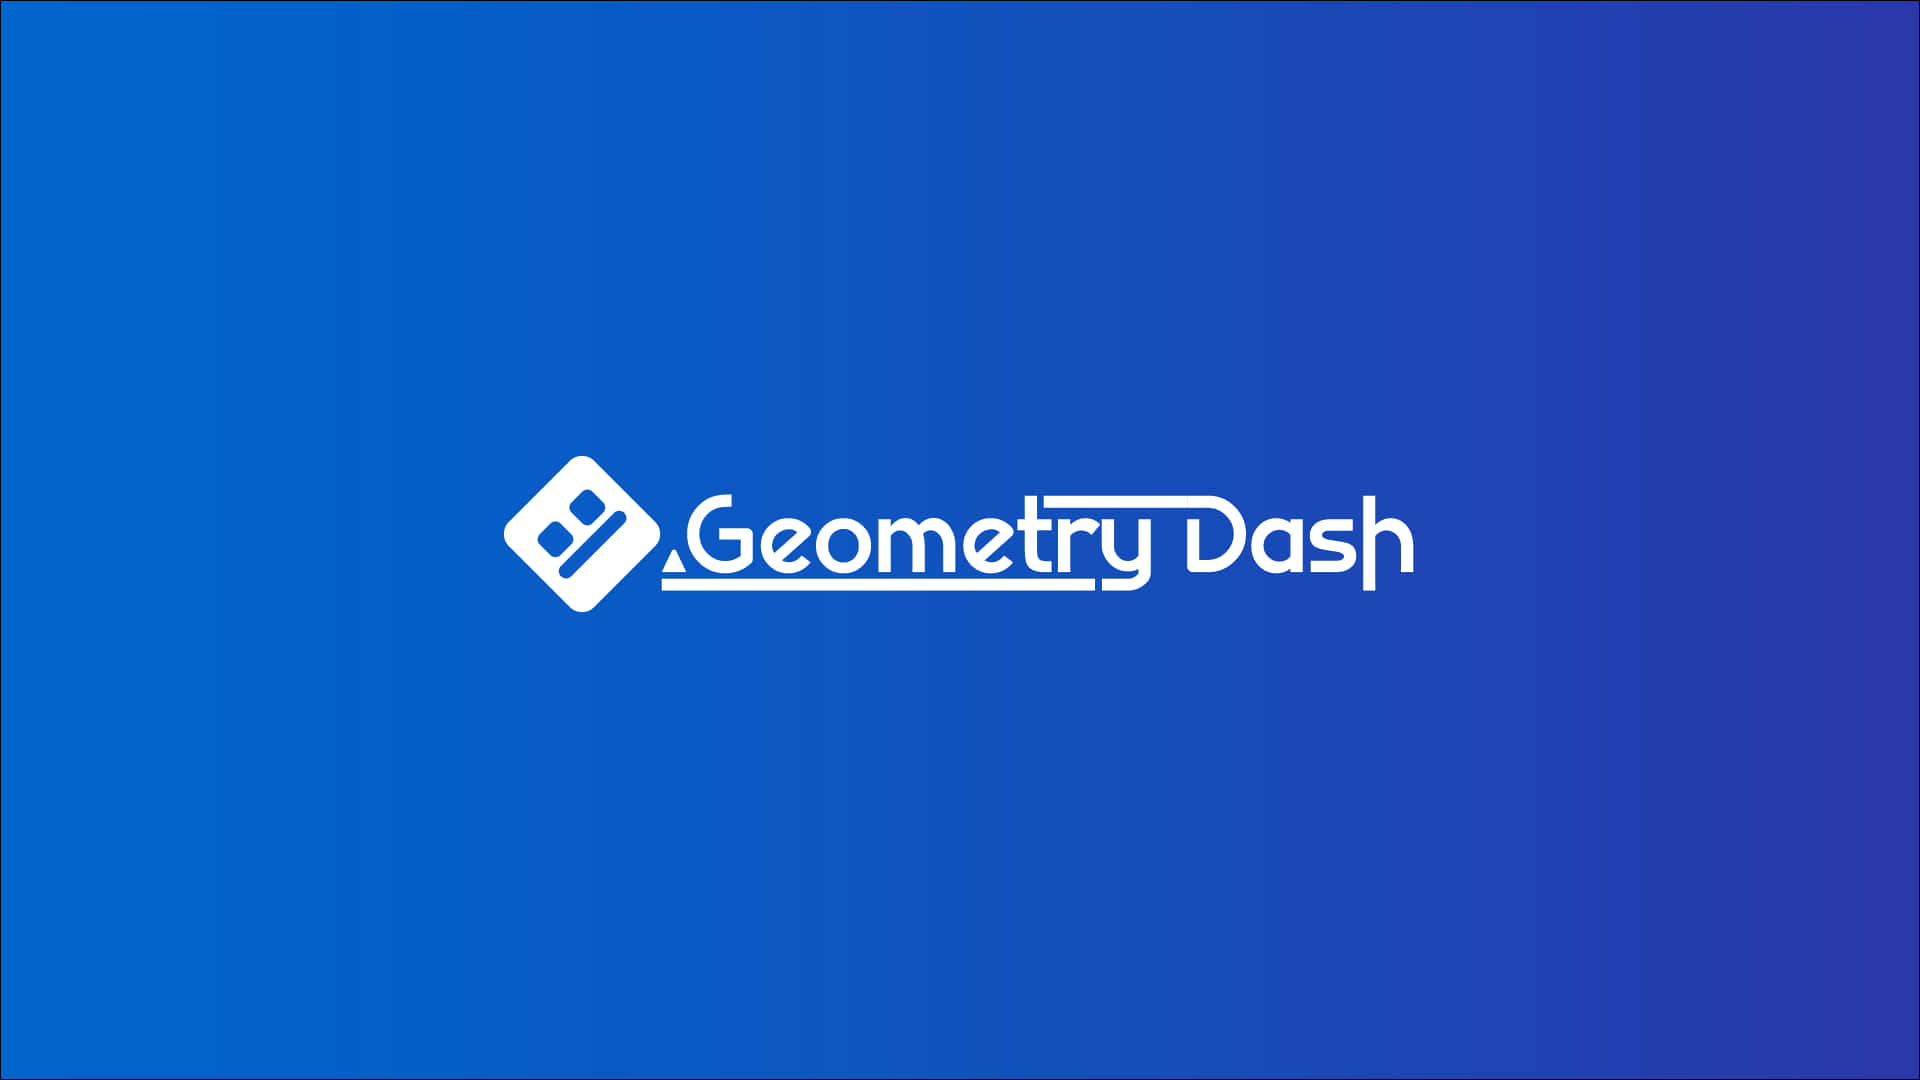 Logobianco Di Geometry Dash Su Sfondo Blu. Sfondo